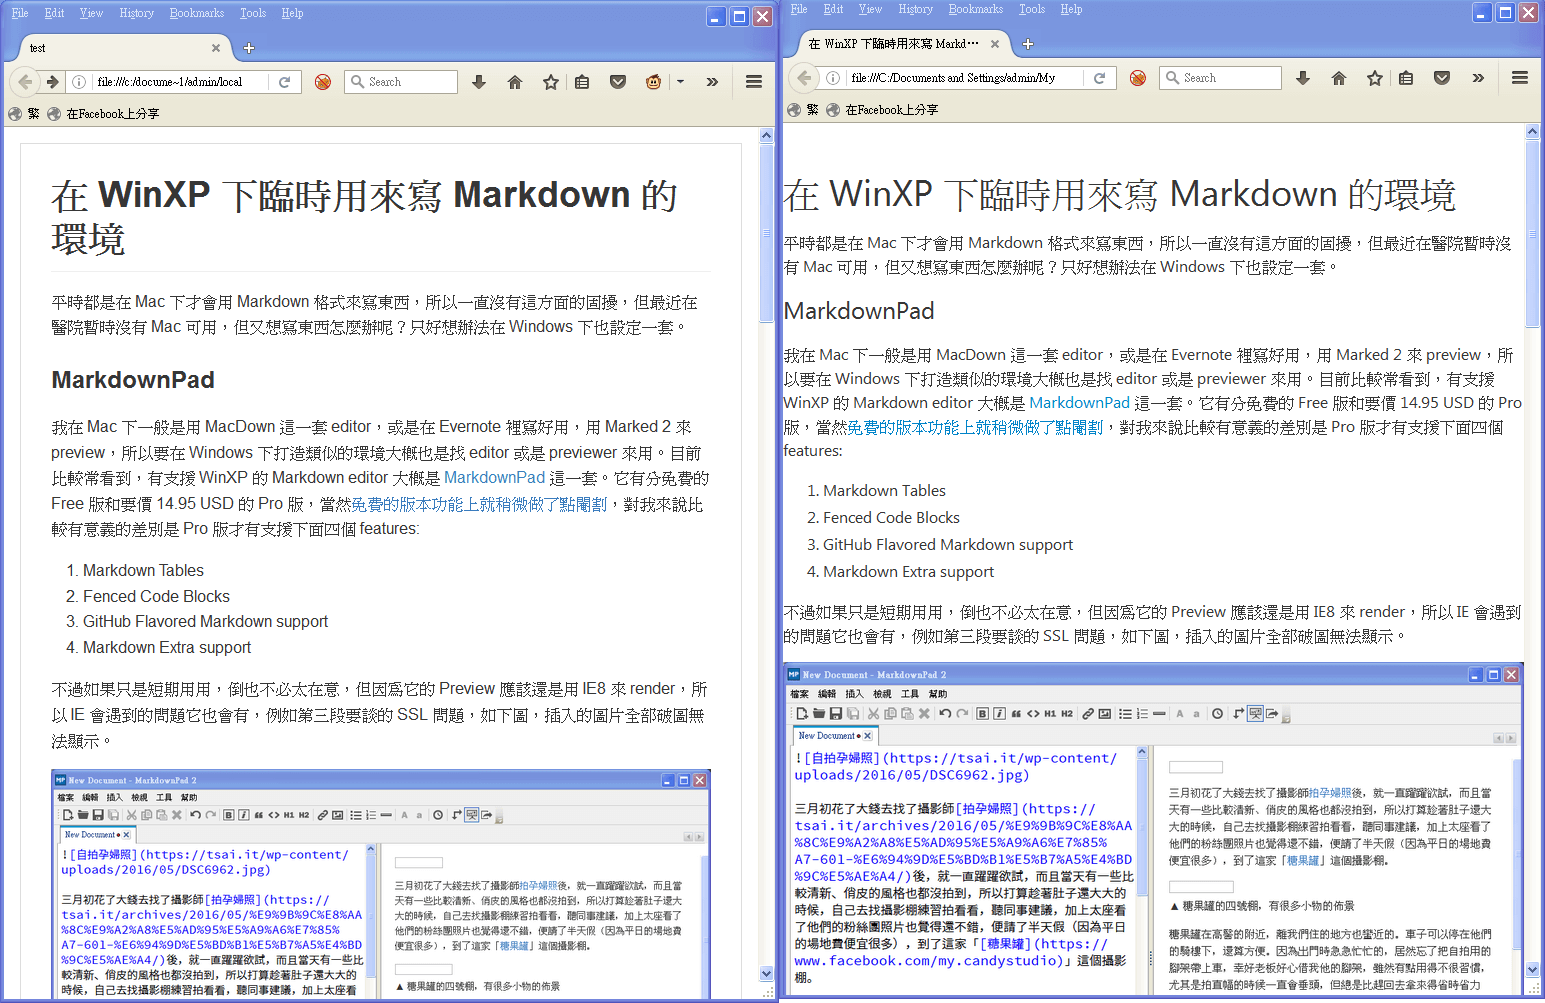 比較 ST Markdown Preview 和 Firefox Markdown View 的差異